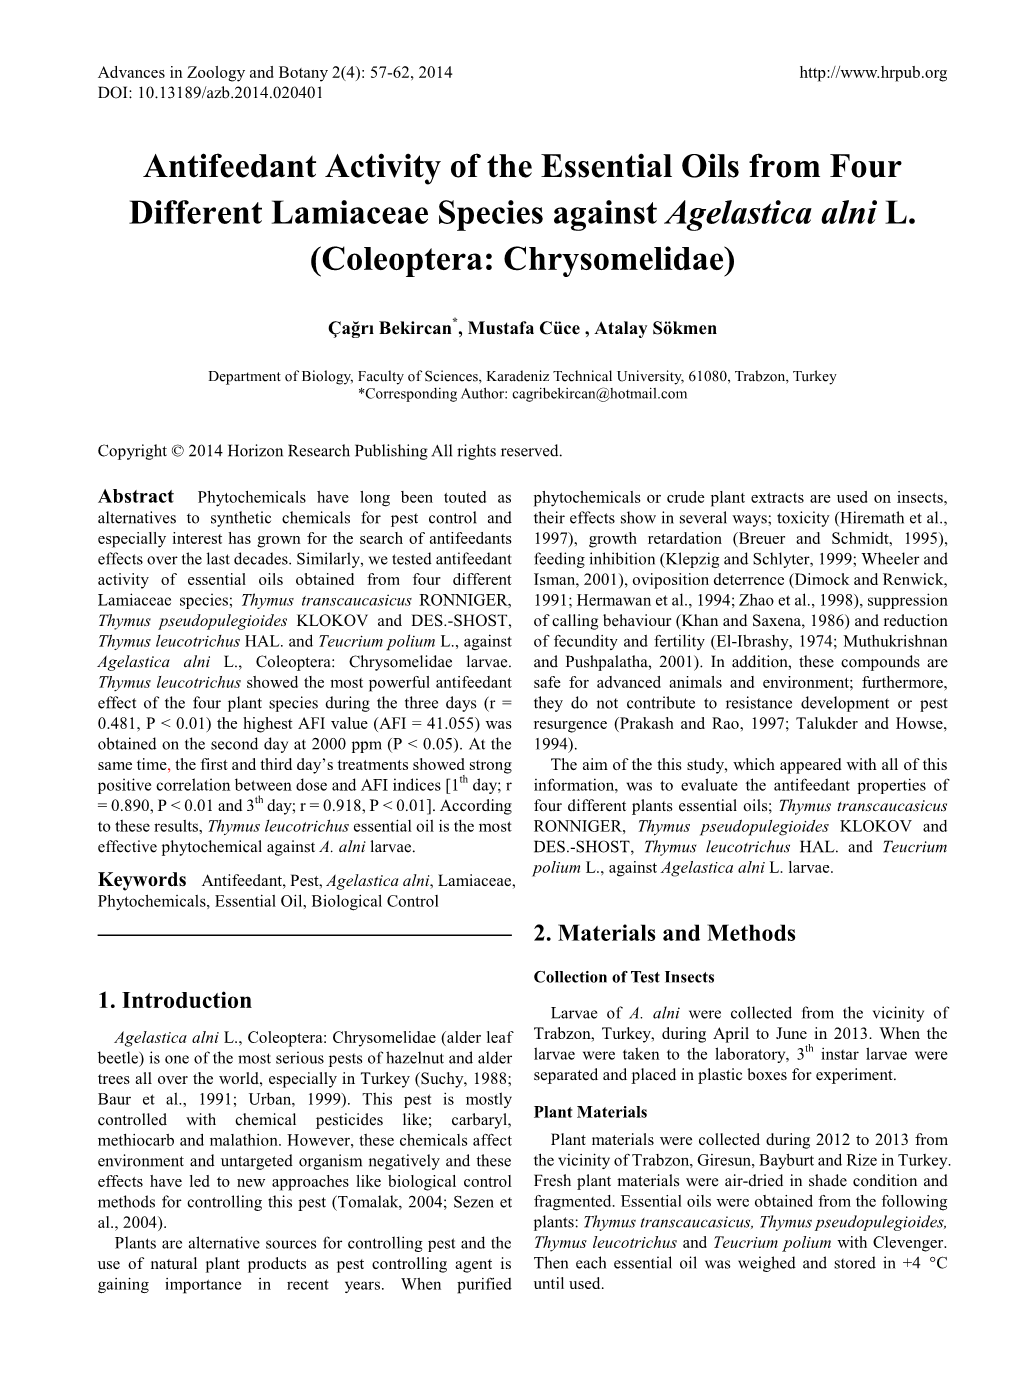 Antifeedant Activity of the Essential Oils from Four Different Lamiaceae Species Against Agelastica Alni L